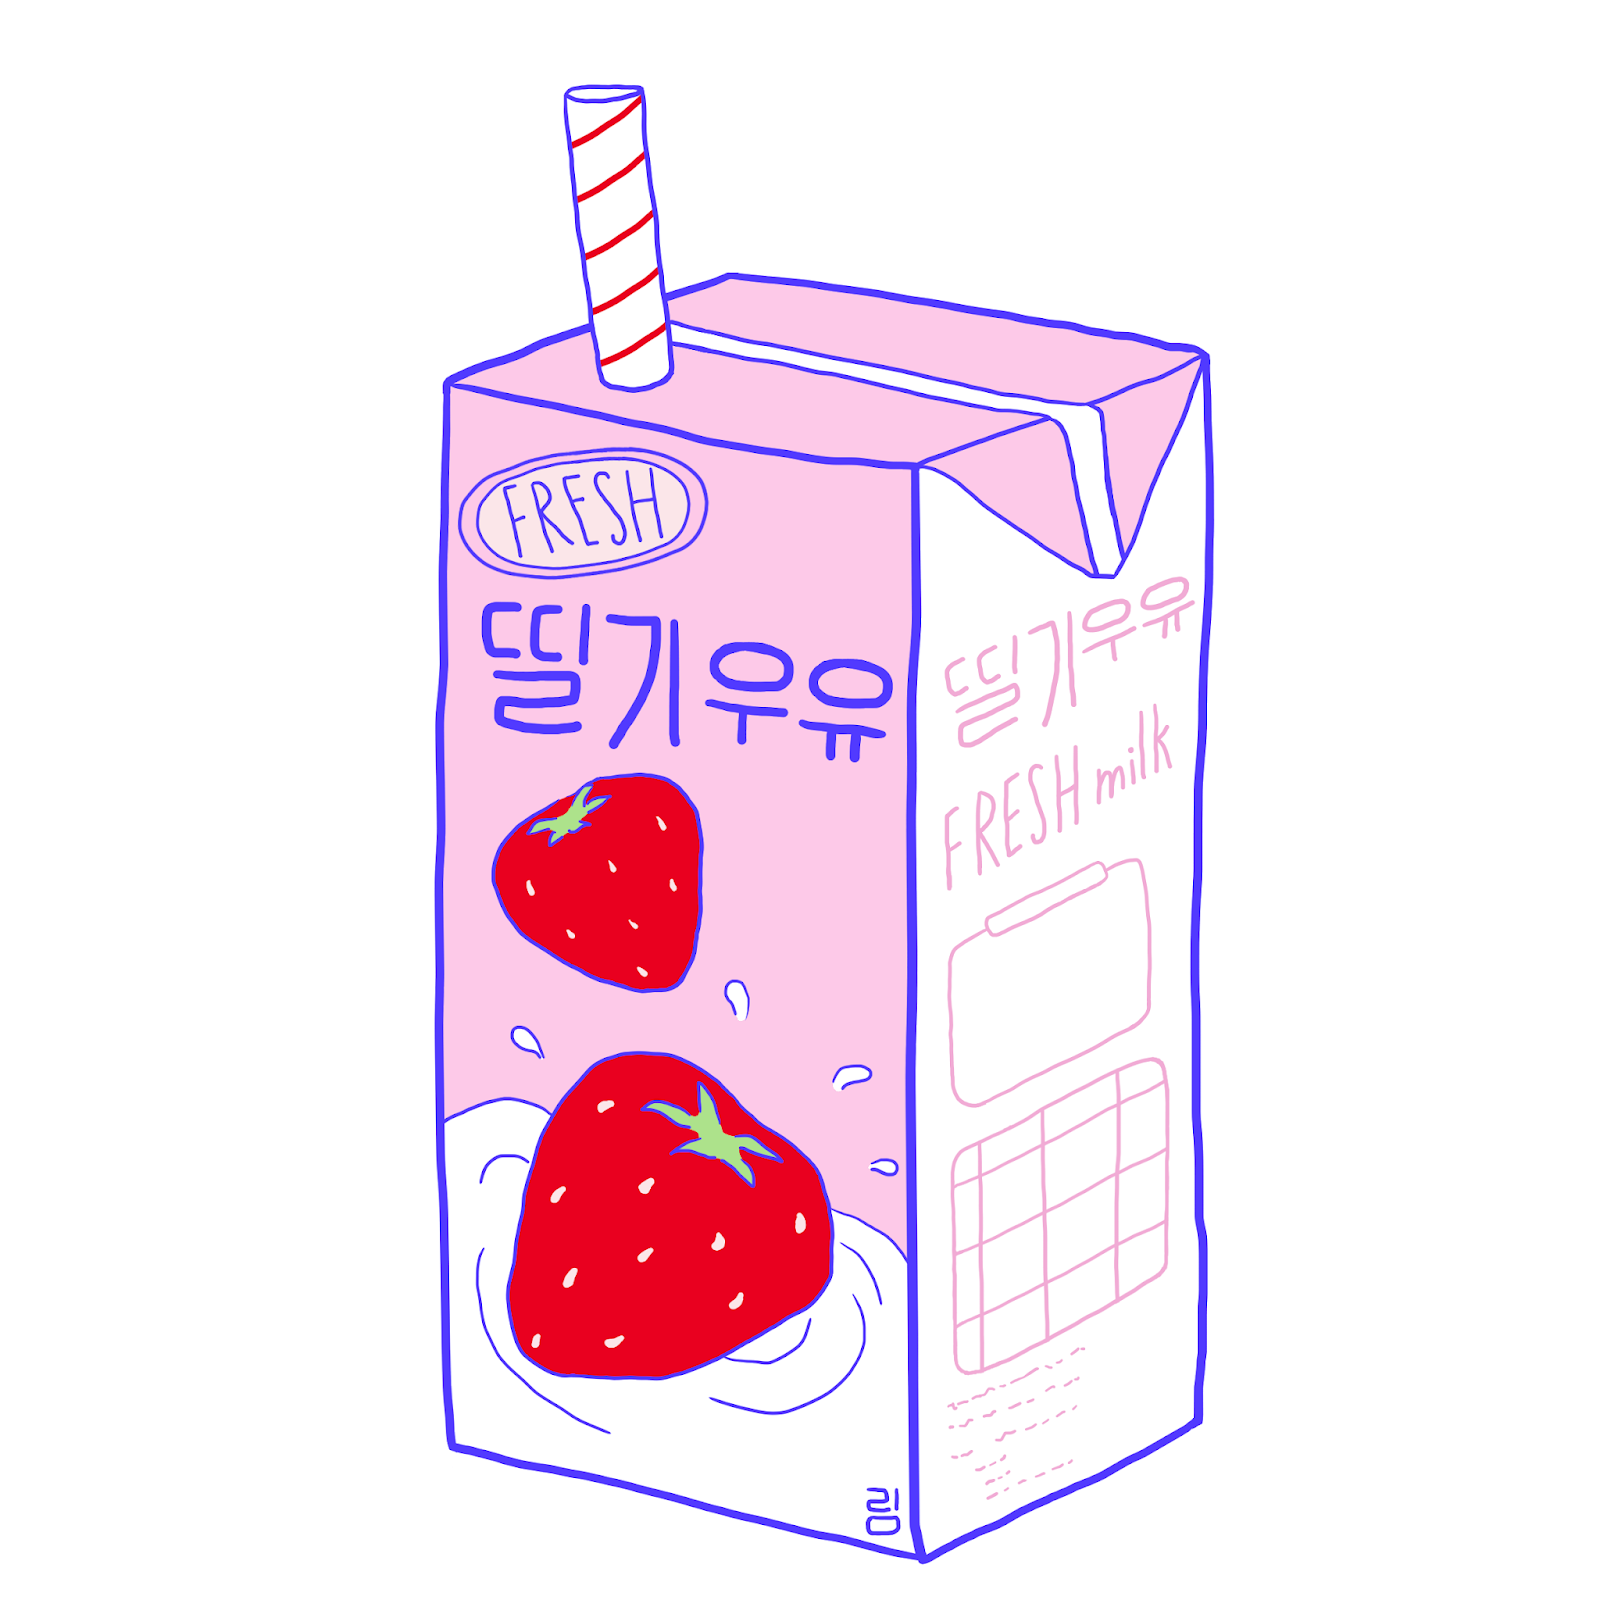 Strawberrymilk twitter